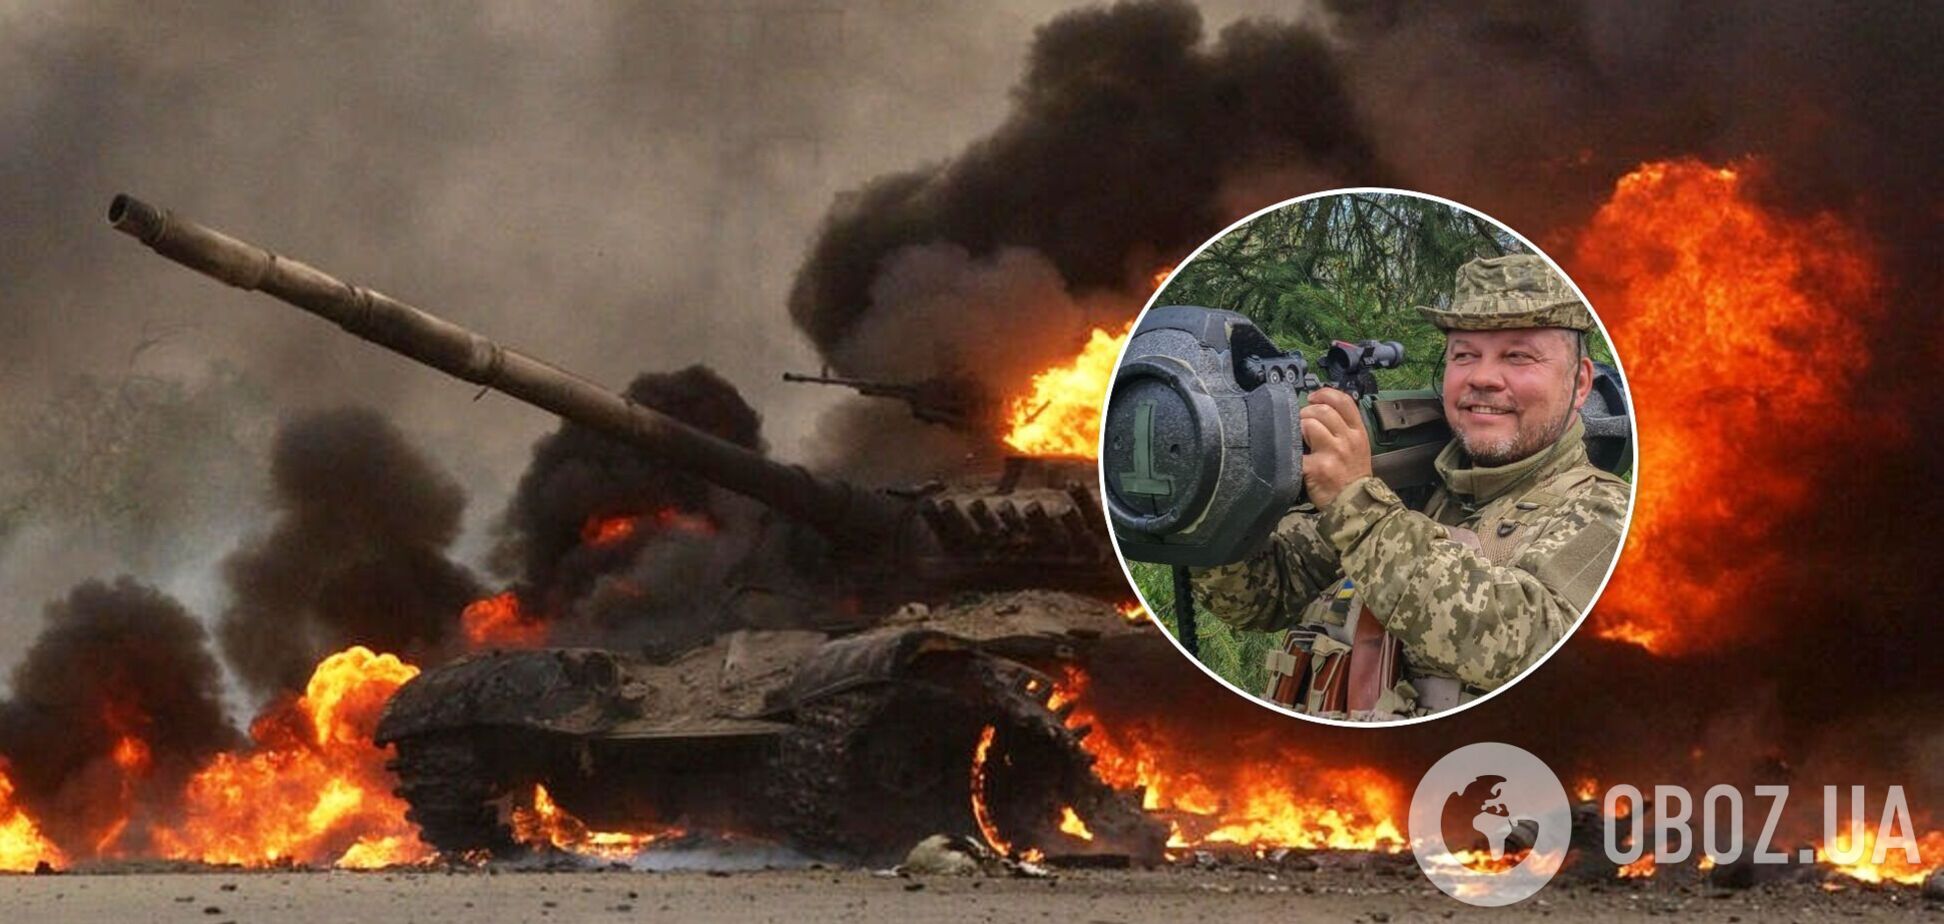 Боєць ЗСУ із позивним 'Афганець' при захисті Чернігова спалив два ворожі танки. Фото